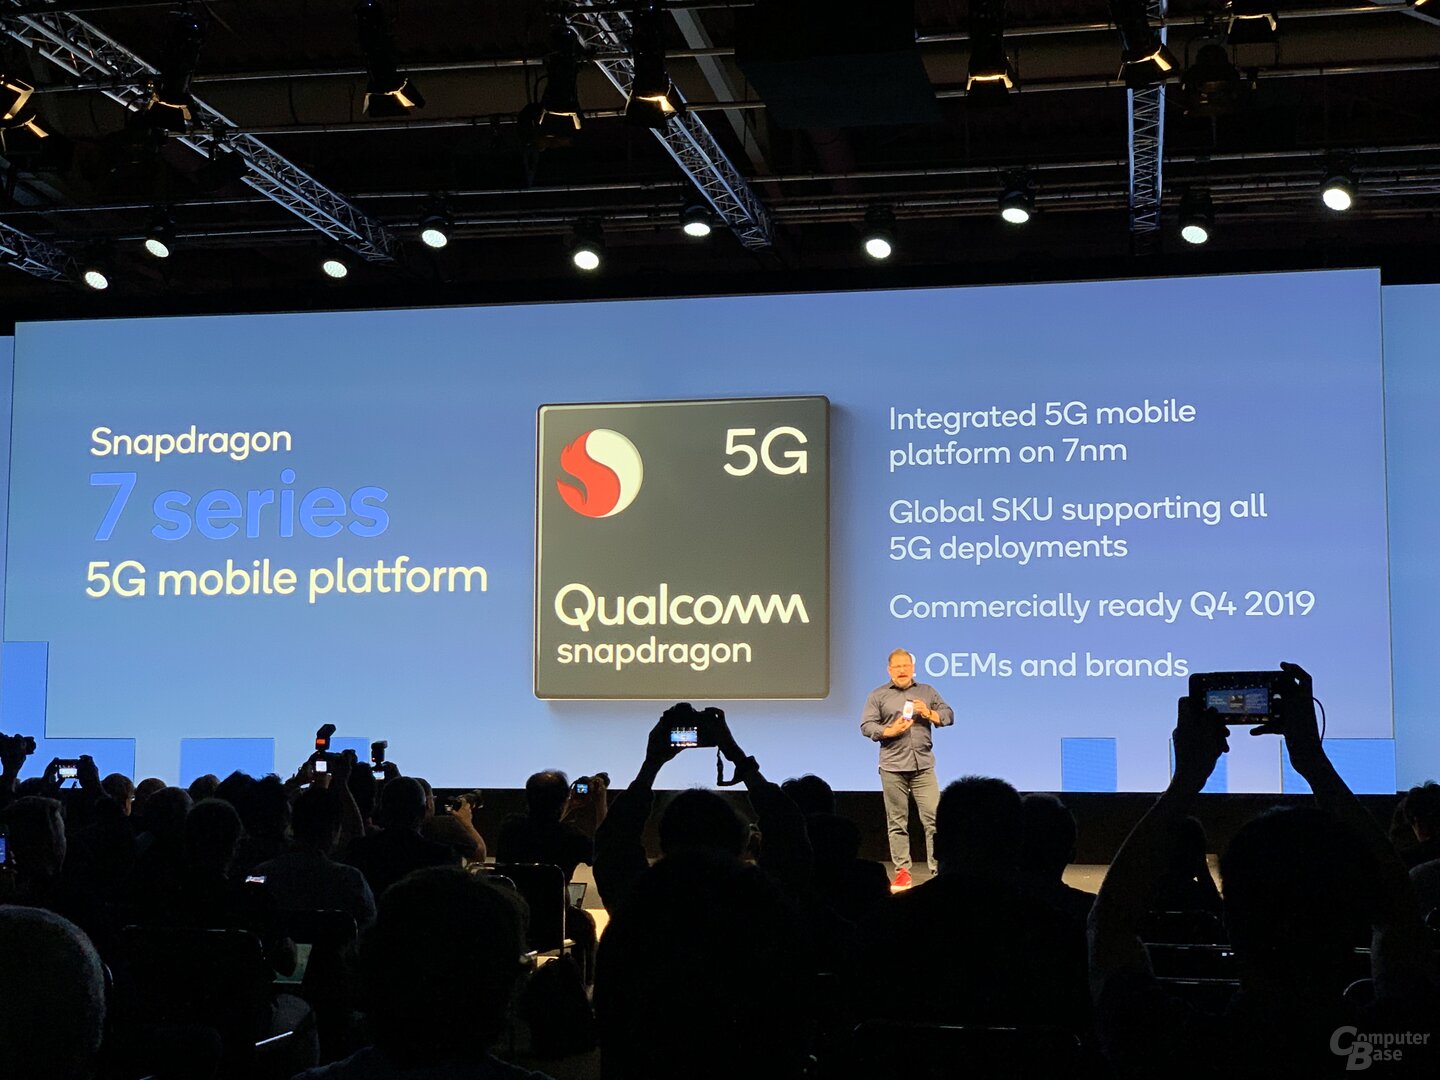 Snapdragon 700 baru di Q4 2019